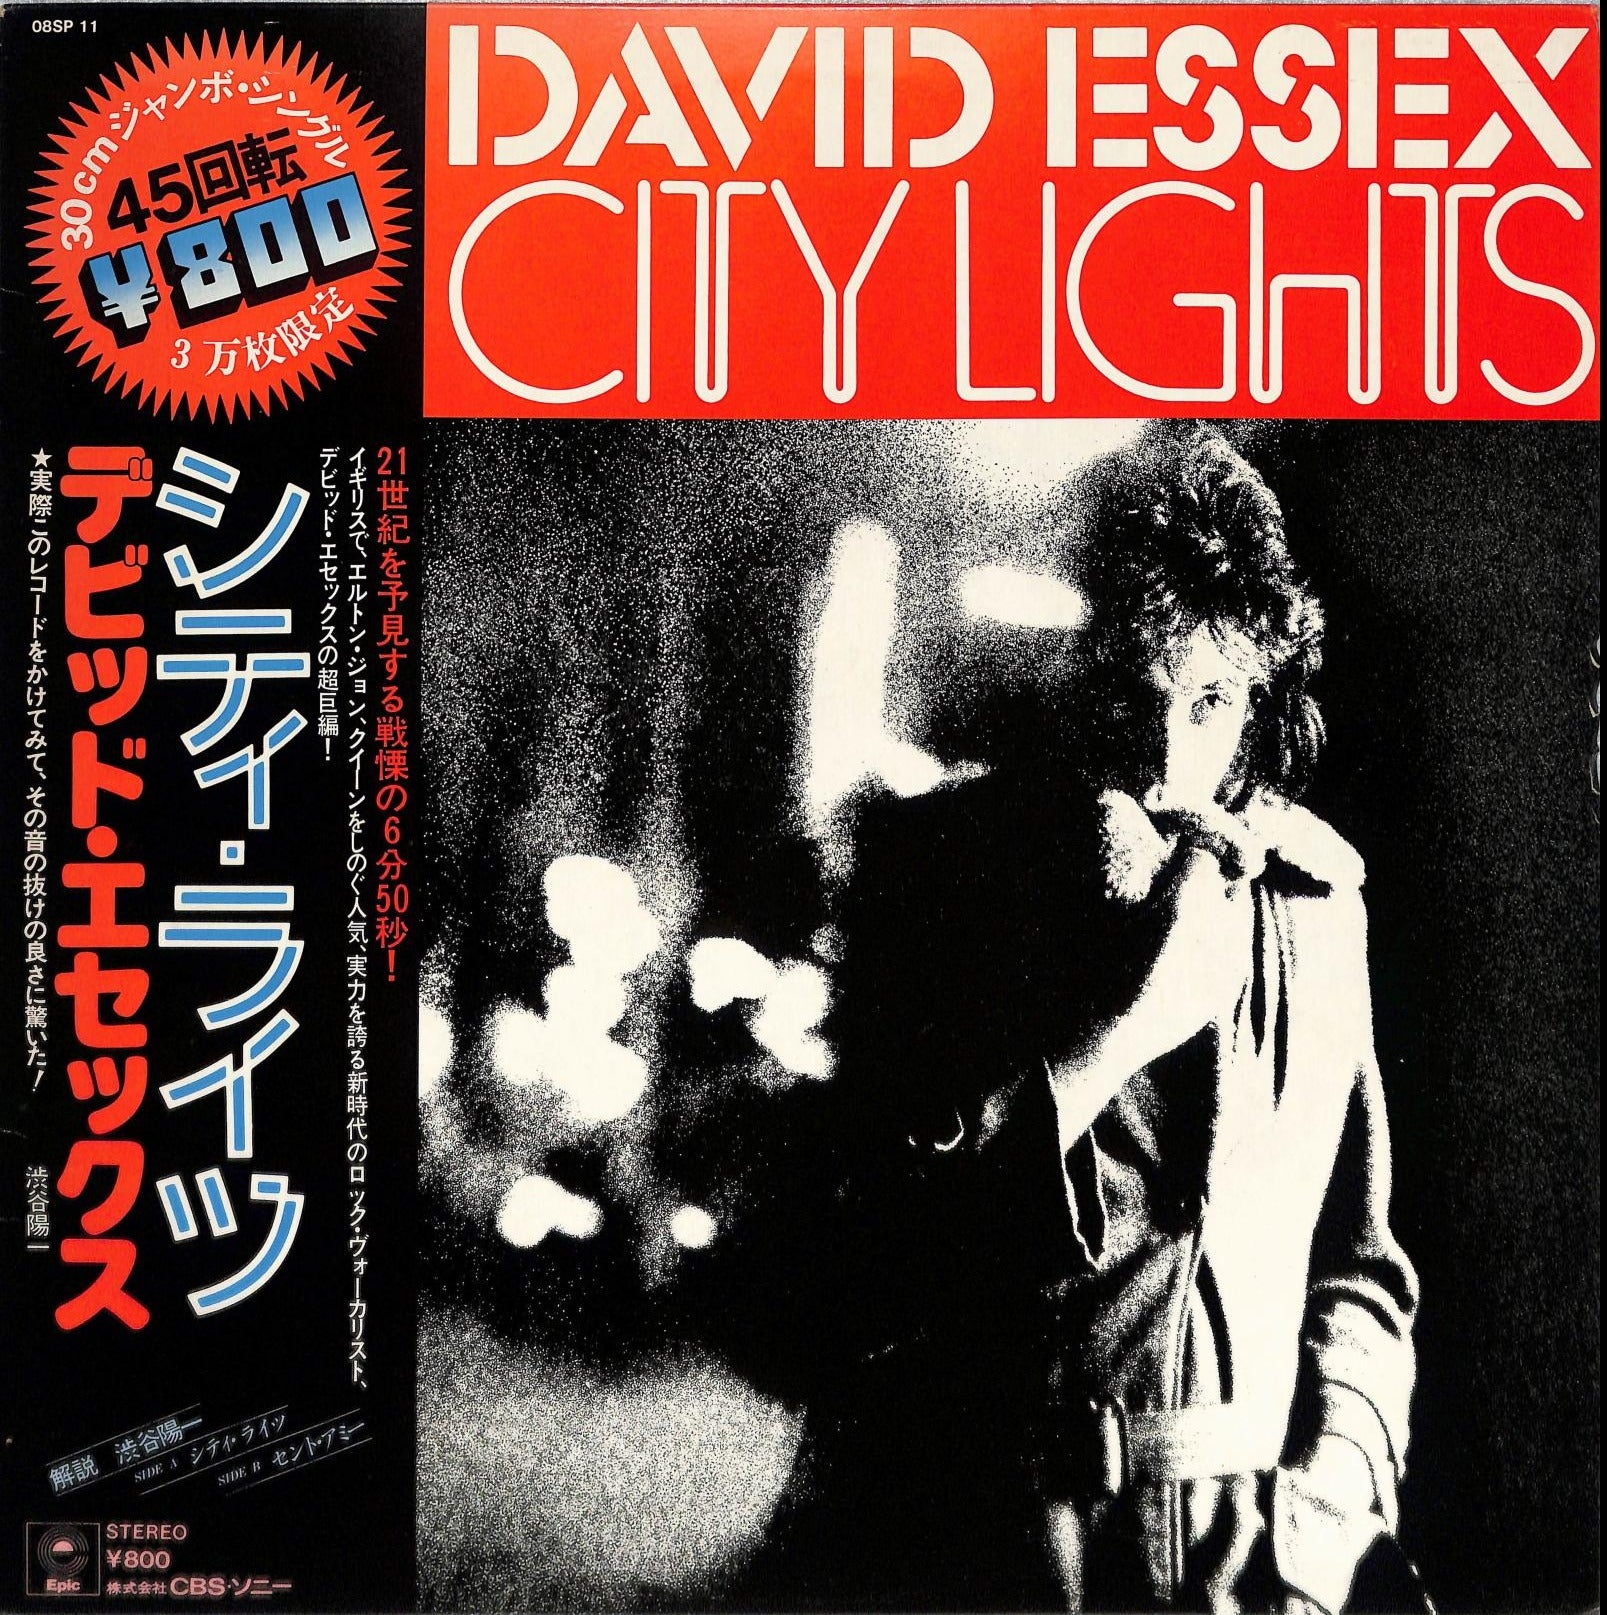 DAVID ESSEX - City Lights